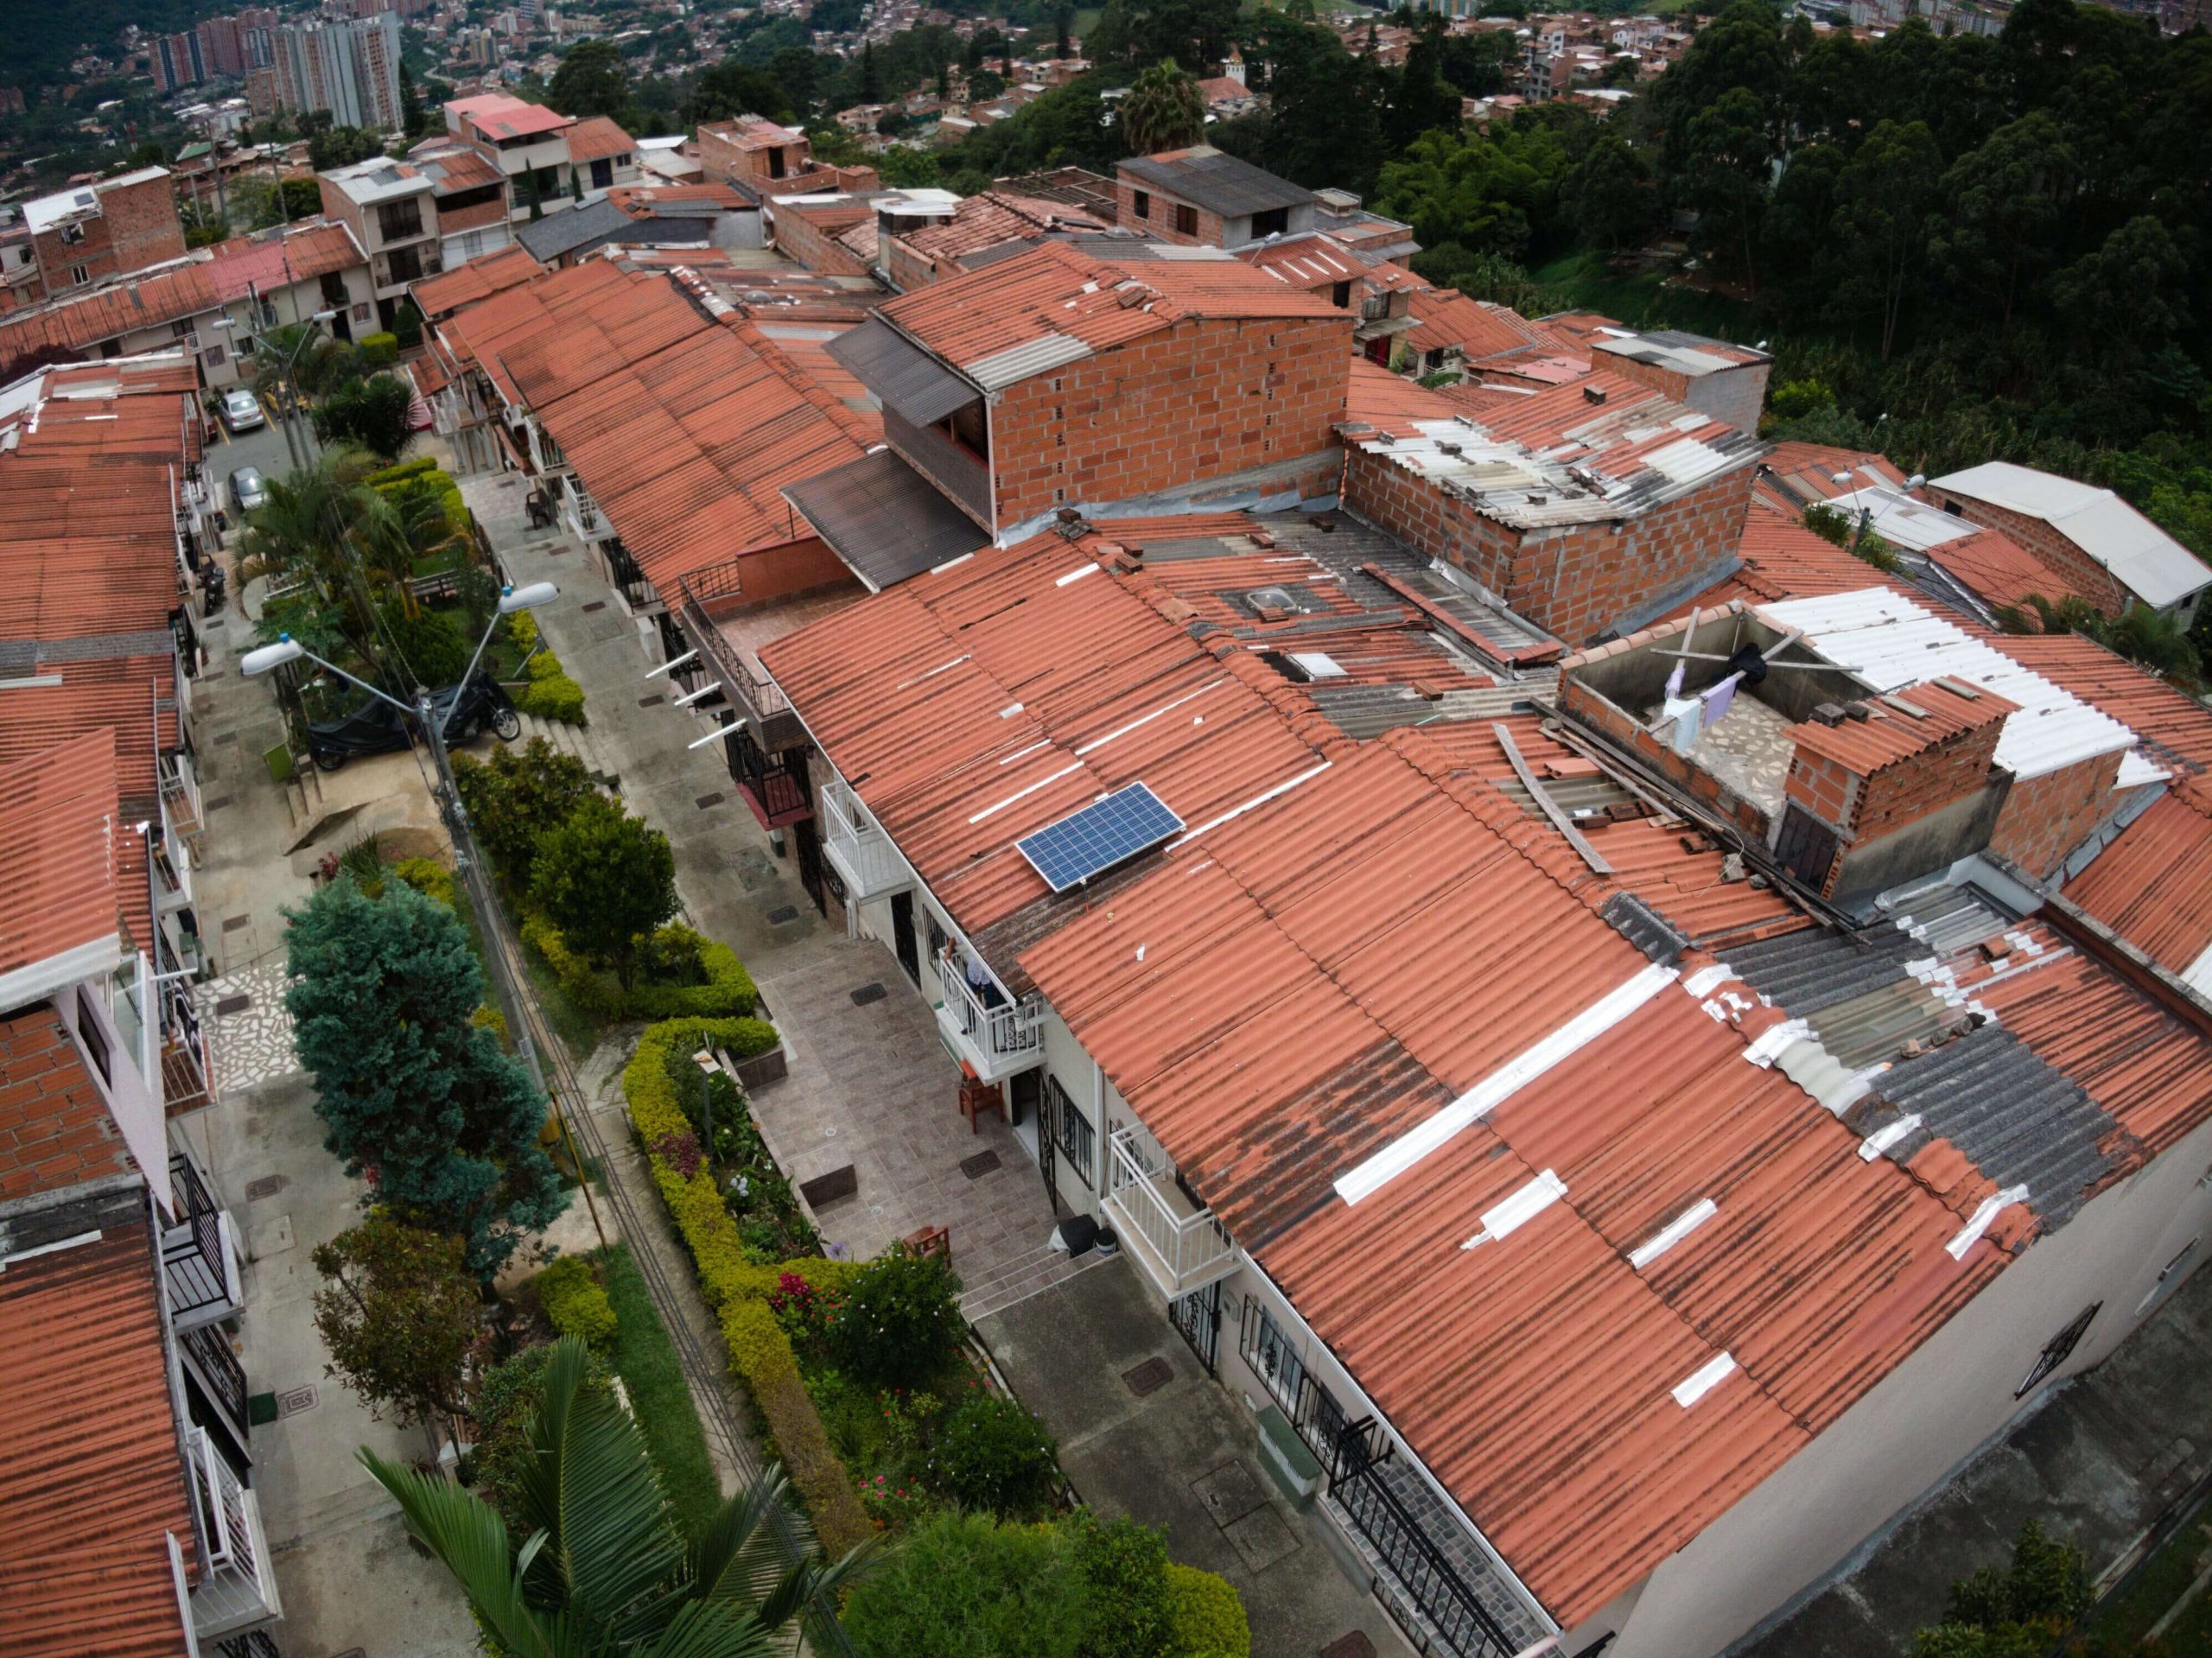 224 familias con viviendas VIS en Antioquia tendrán techos solares y ahorrarán en el costo del servicio de energía